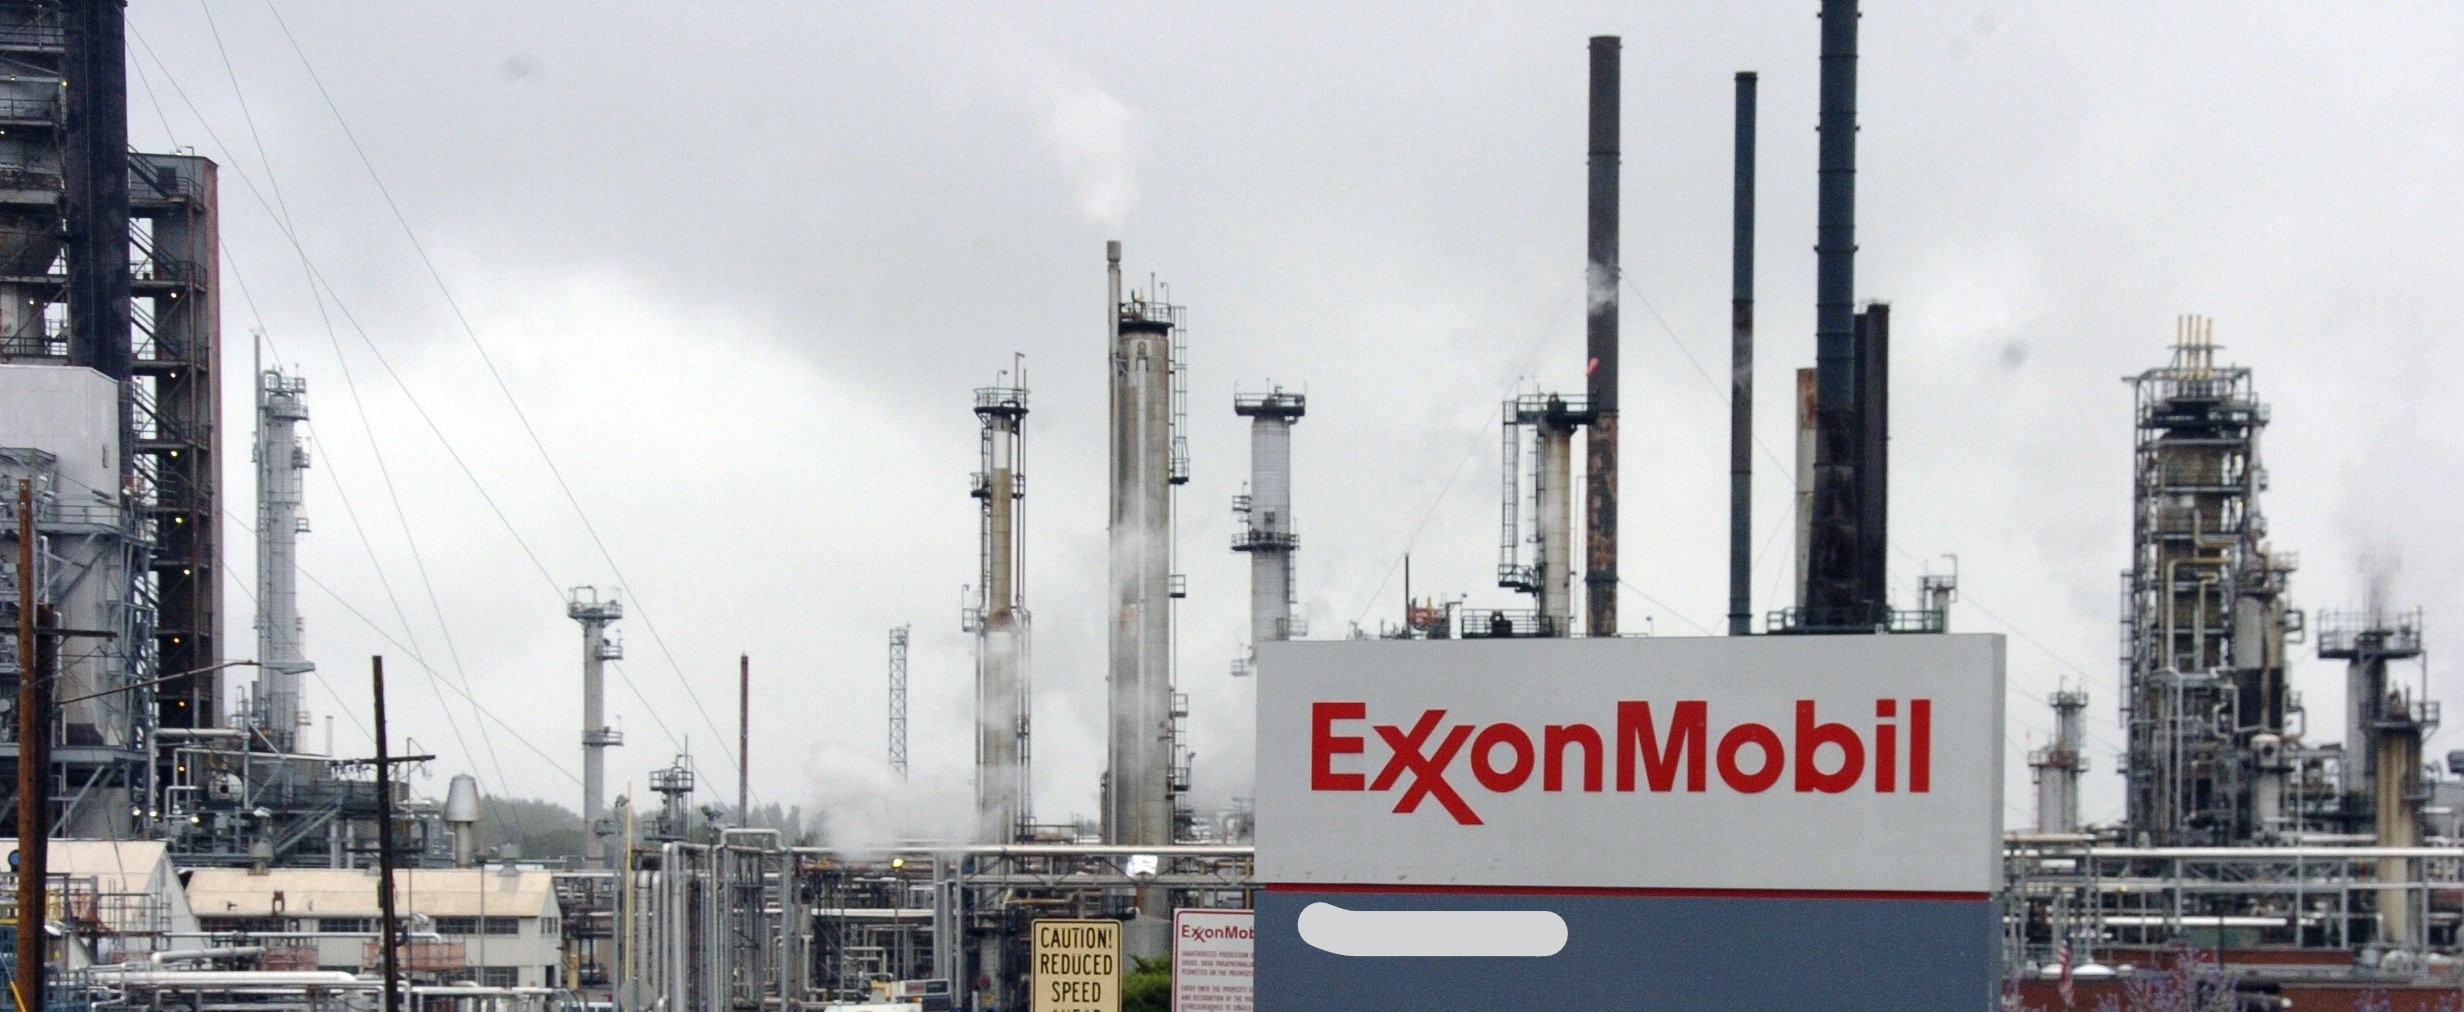 Προβληματισμός για την Exxon MobiI επικρατεί στο Δήμο Λάρνακας